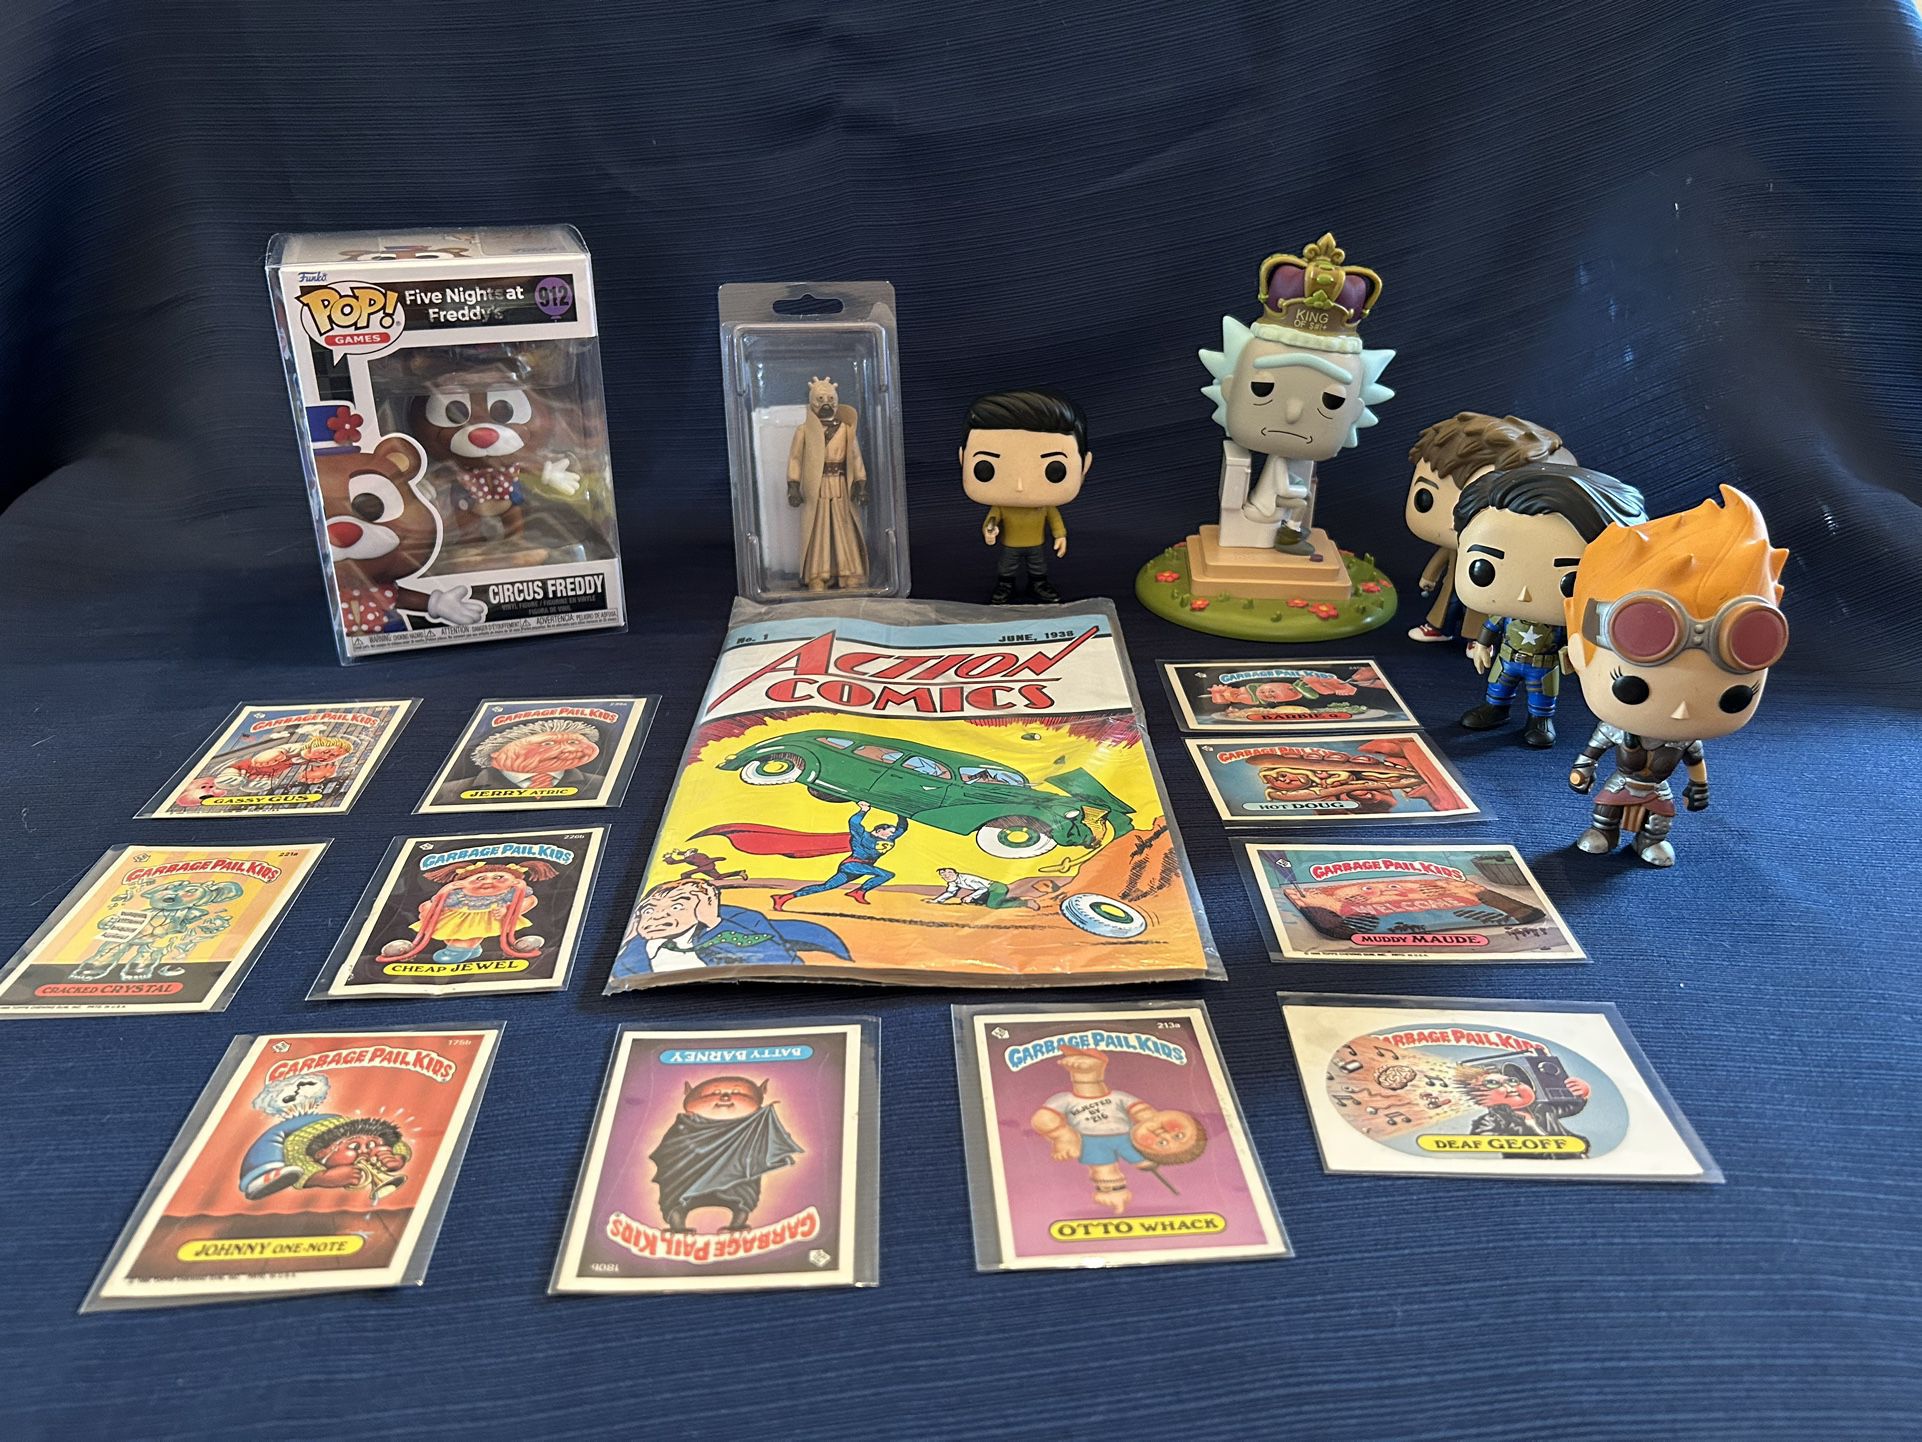 Pop Culture Collectibles Bundle: Funko Pops Cpt Kirk, Star Wars Action Figure, Garbage Pail Kids Cards,Cert Of Authenticity Action Vintage Comics